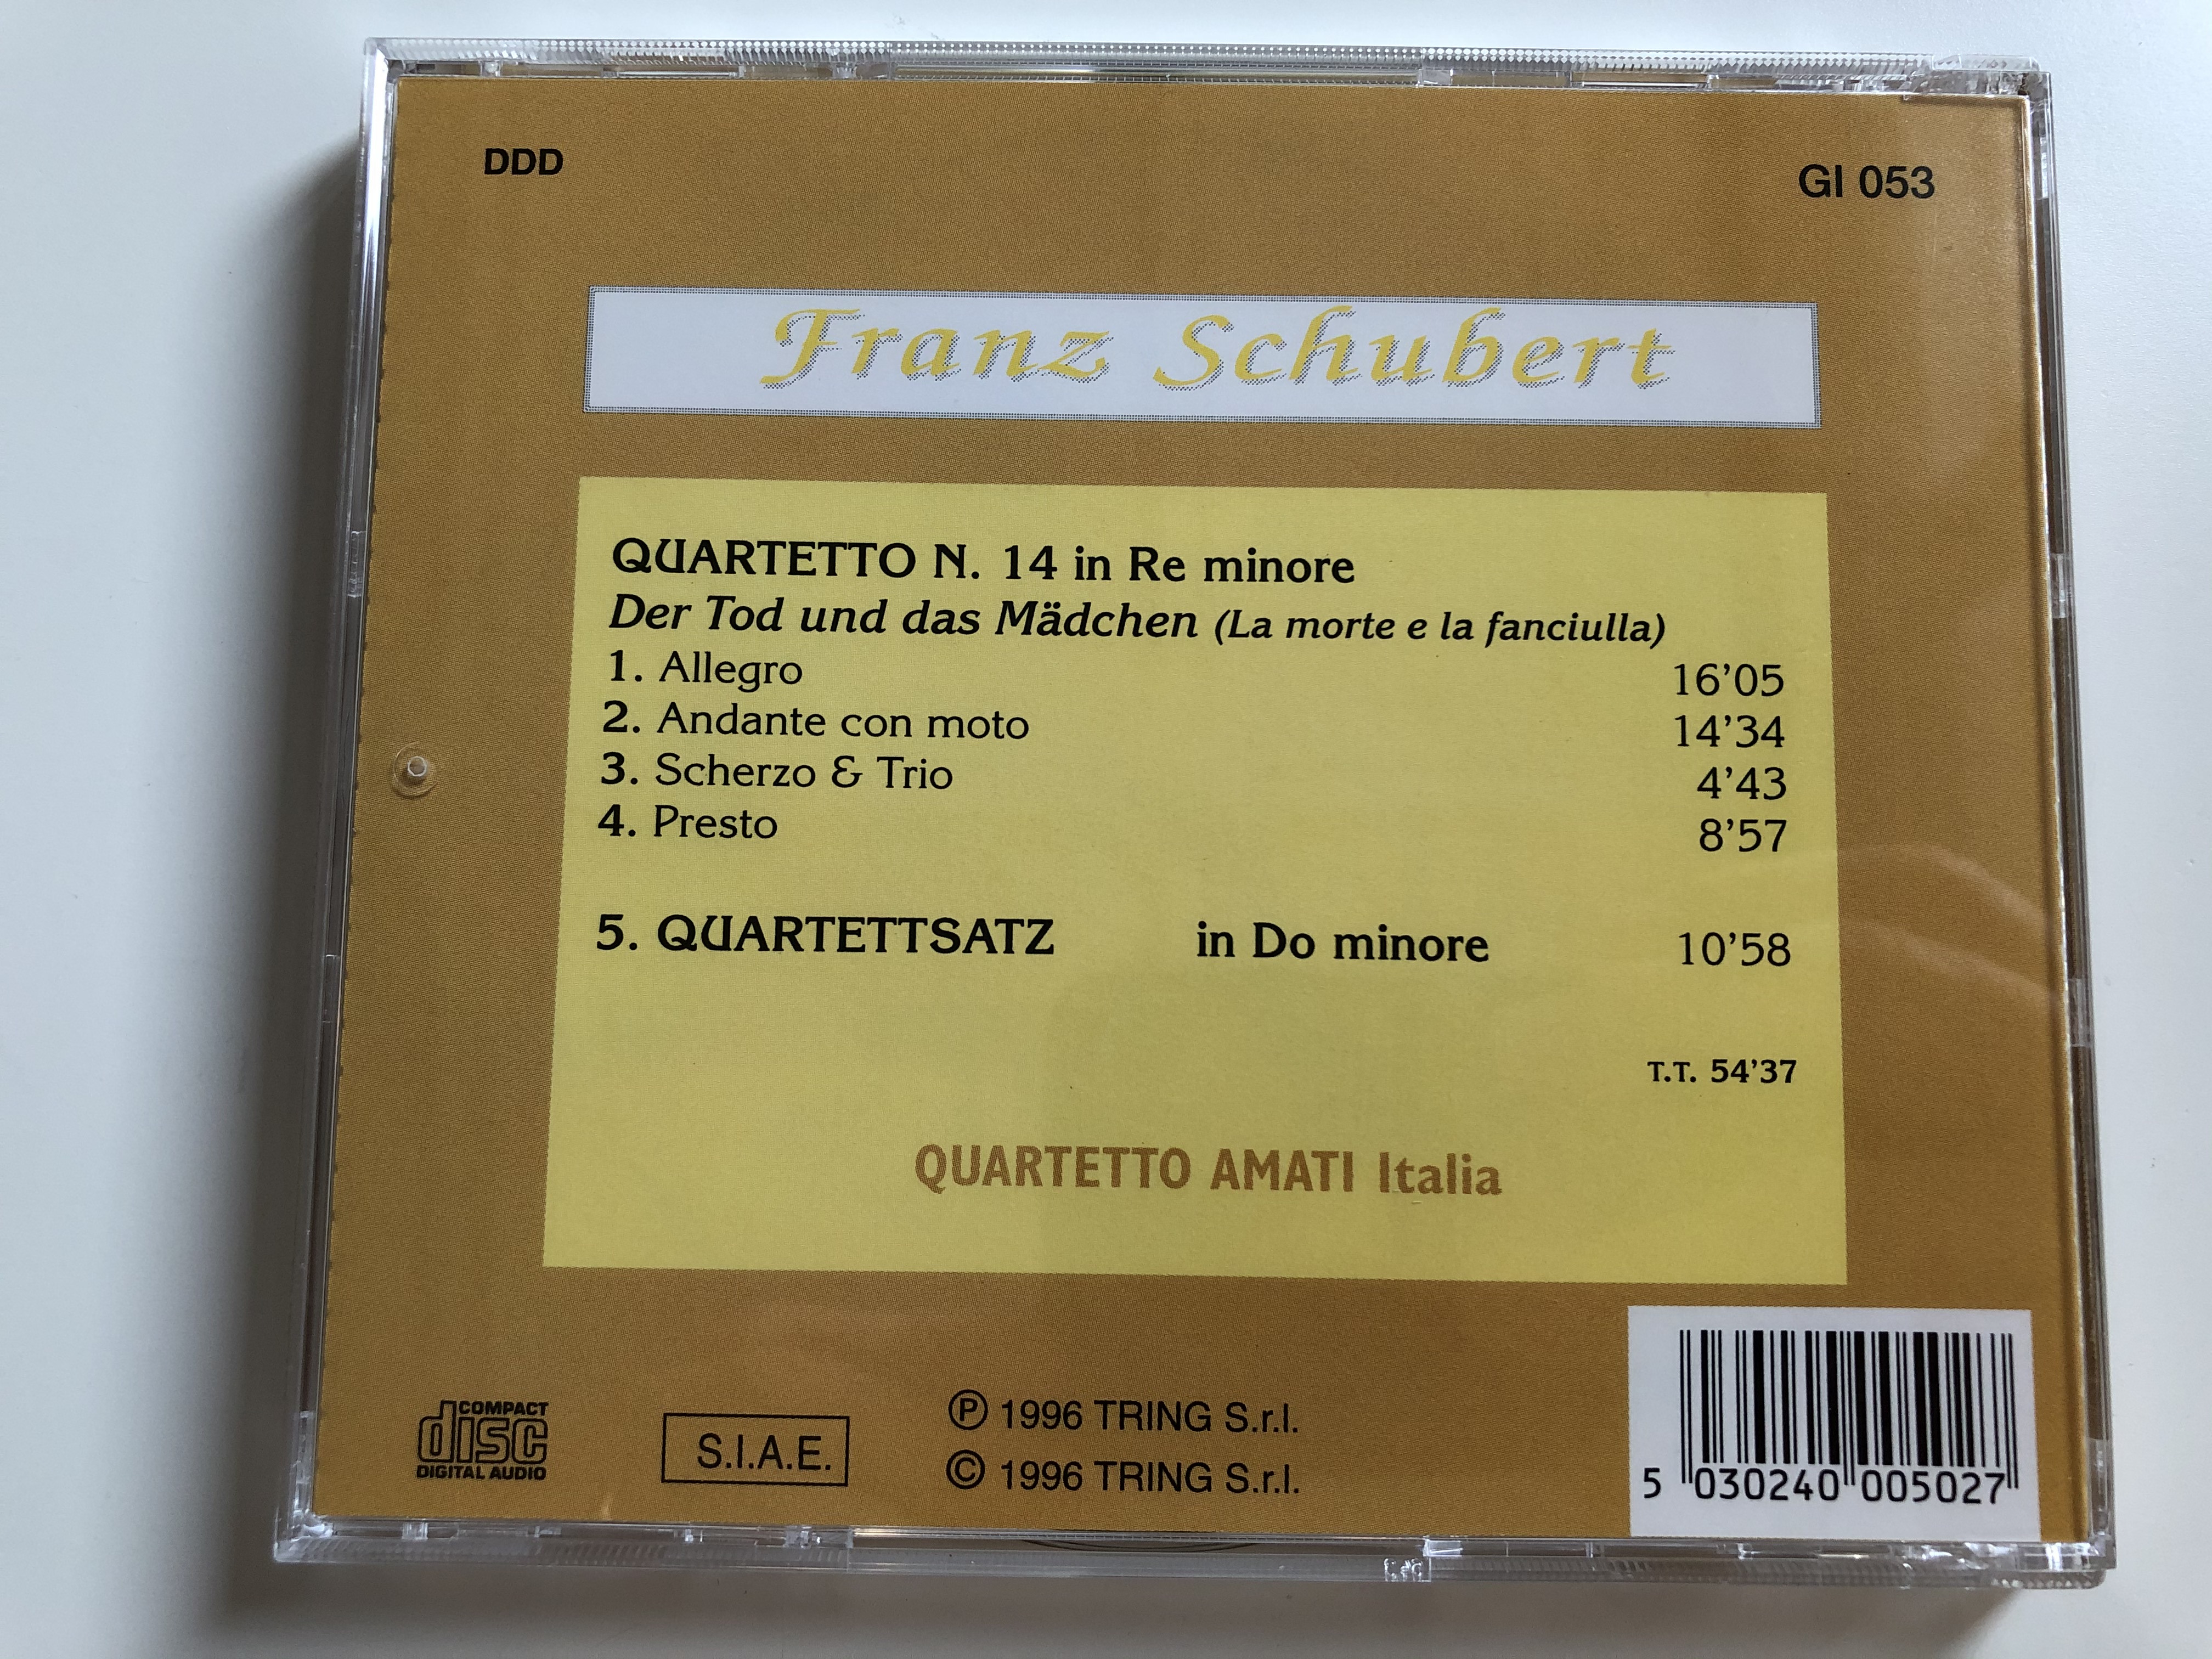 franz-schubert-der-tod-und-das-madchen-la-morte-e-la-fanciulla-quartetto-amati-italia-gusto-italiano-audio-cd-1996-gi-053-5-.jpg